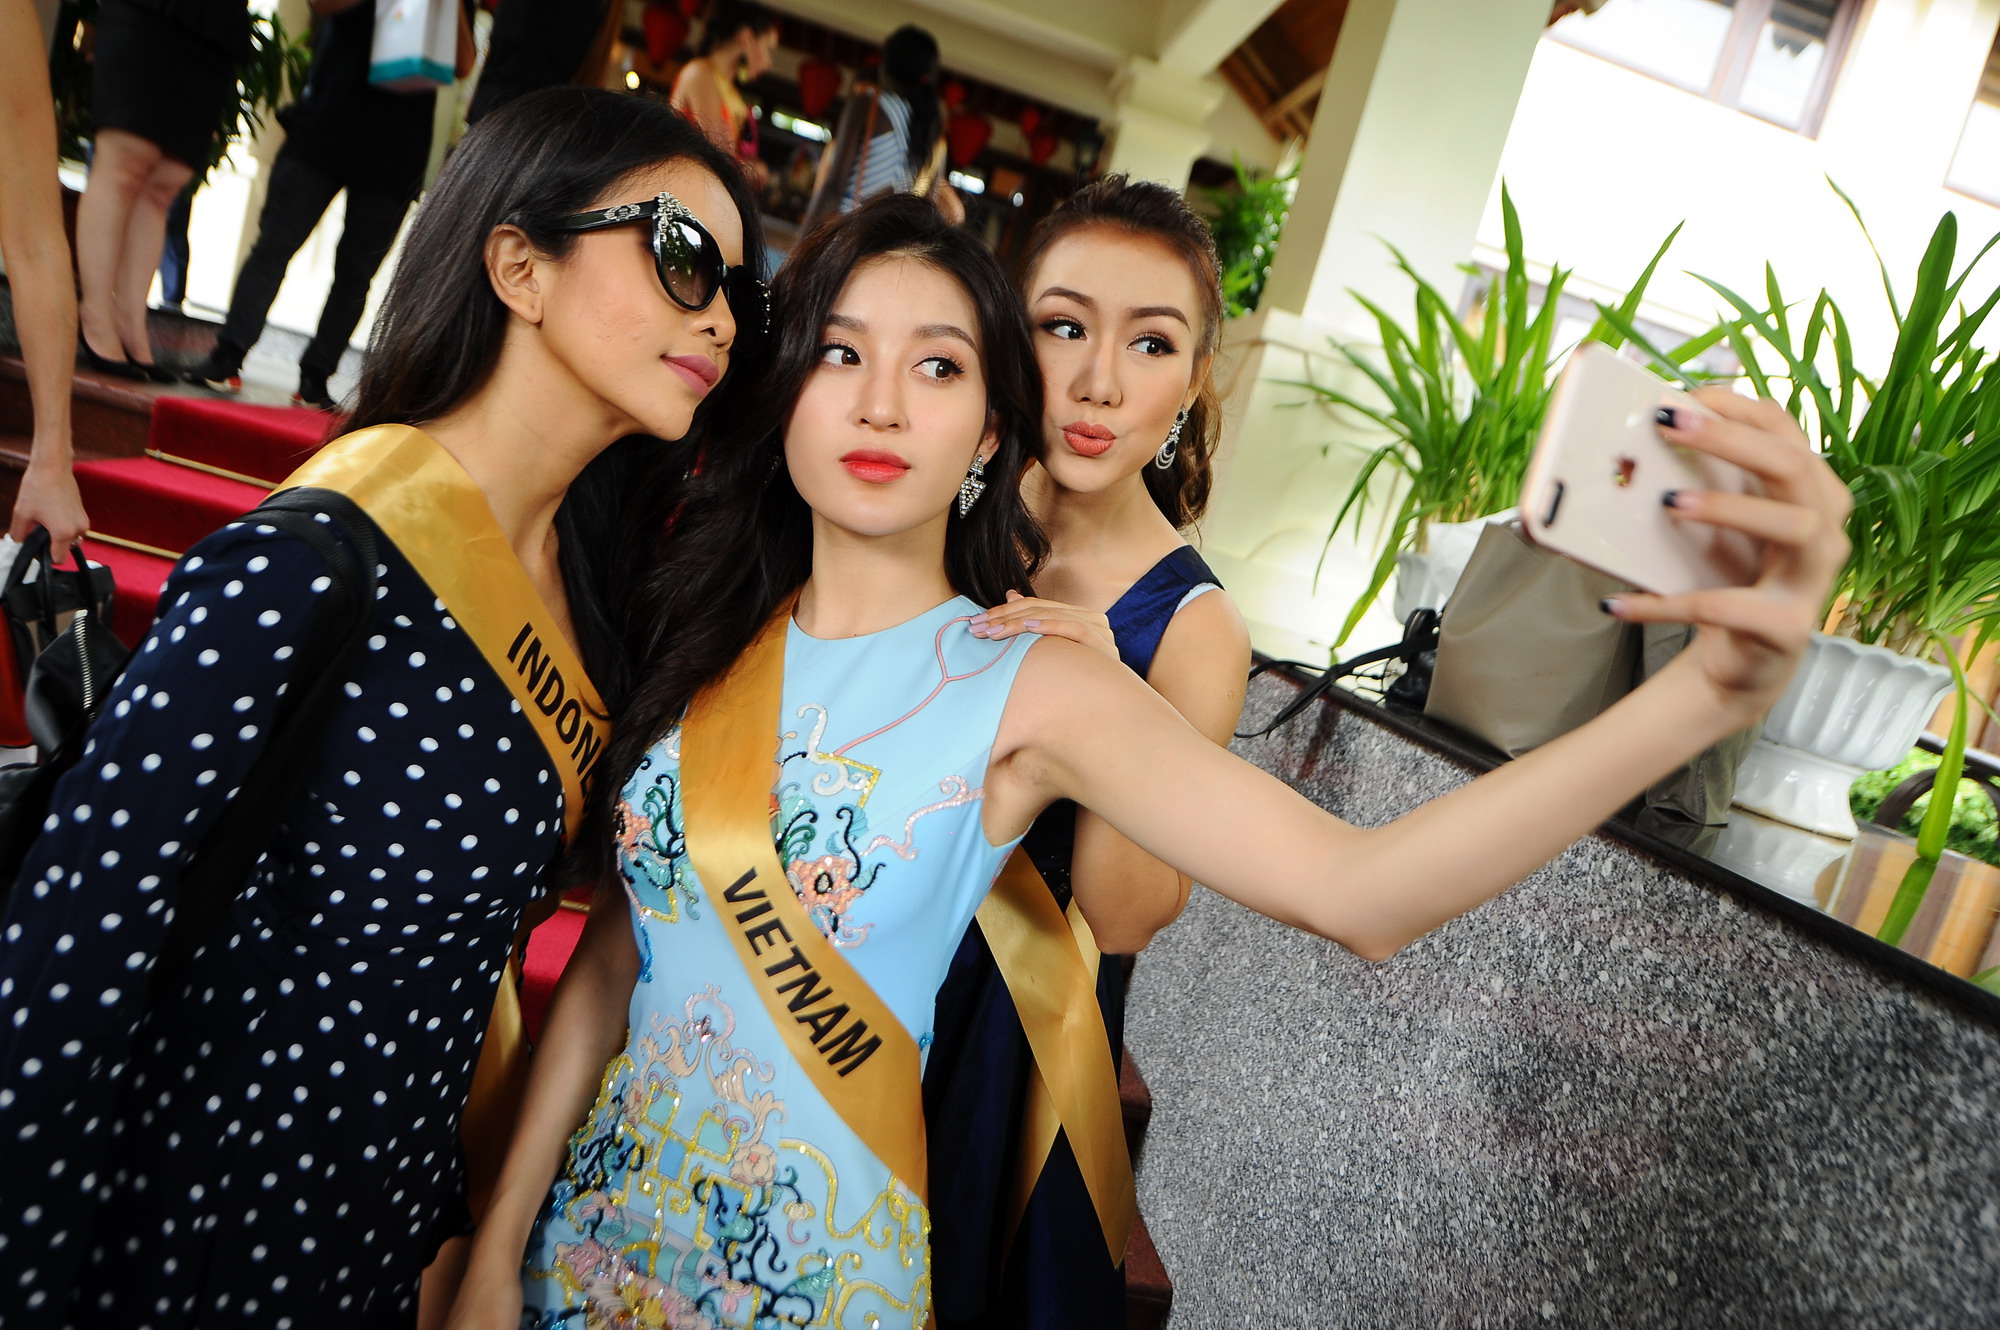 Huyền My xinh đẹp đọ sắc cùng các thí sinh Miss Grand International tại động Thiên Đường - Ảnh 2.